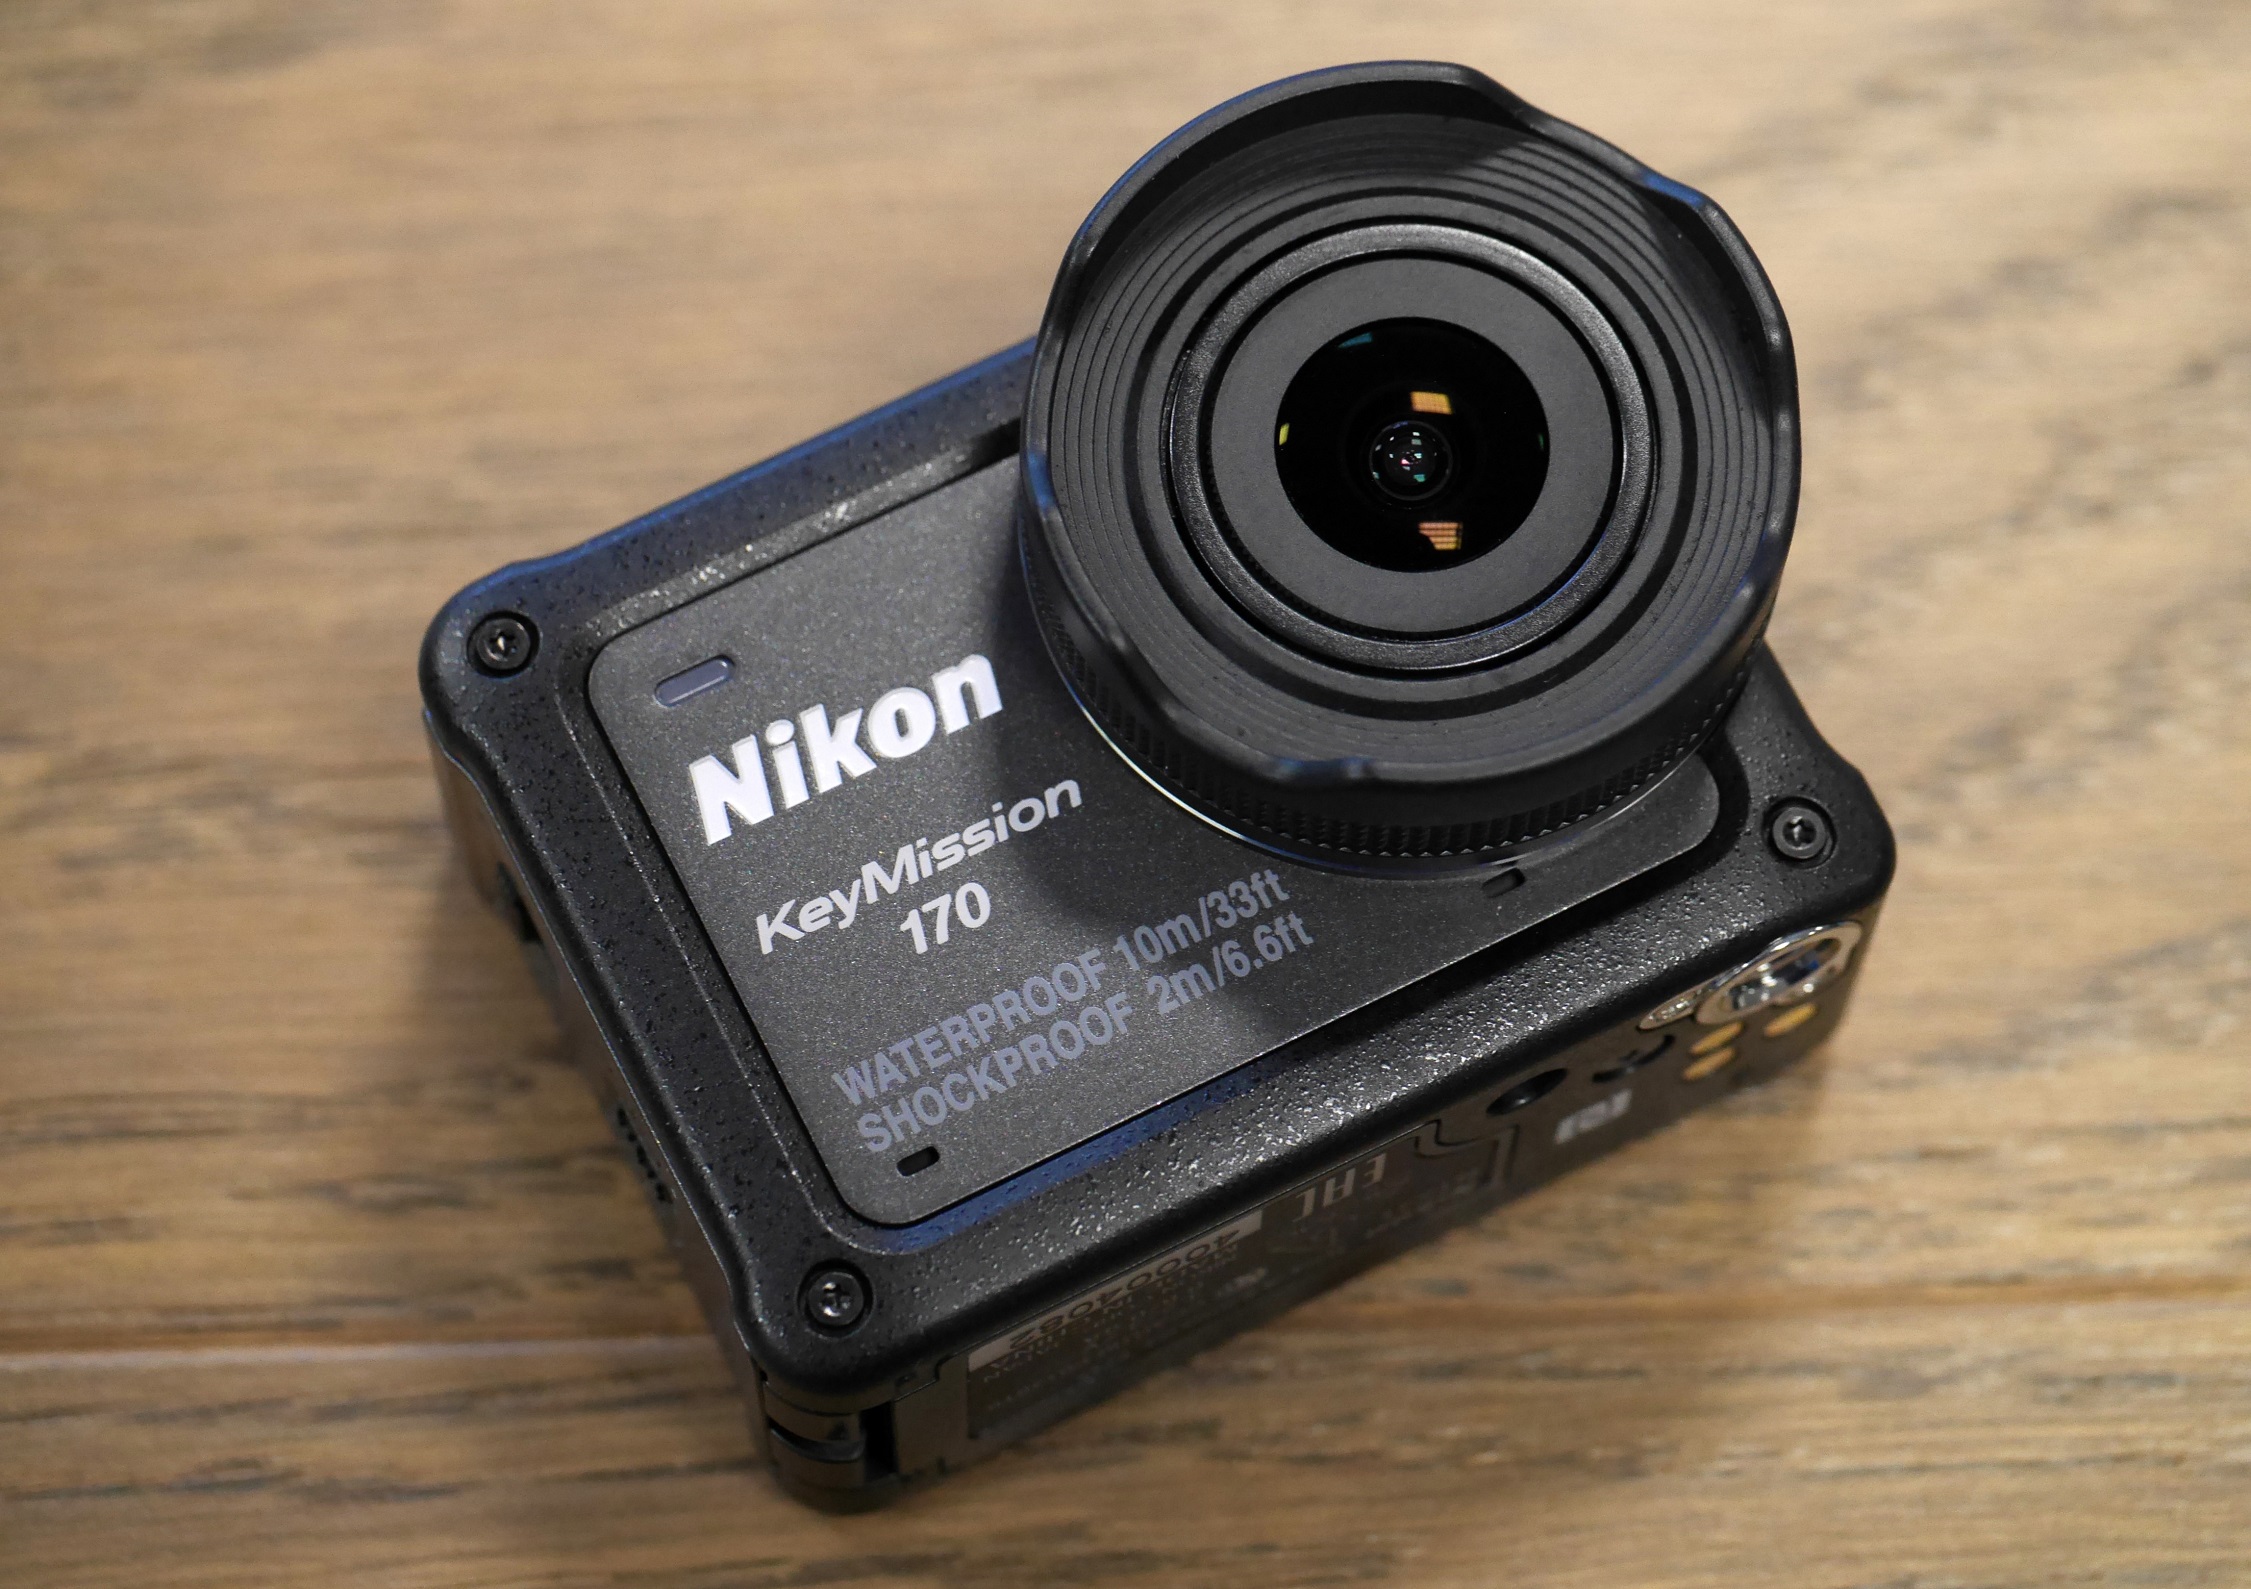 Nikon KeyMission 170 Review